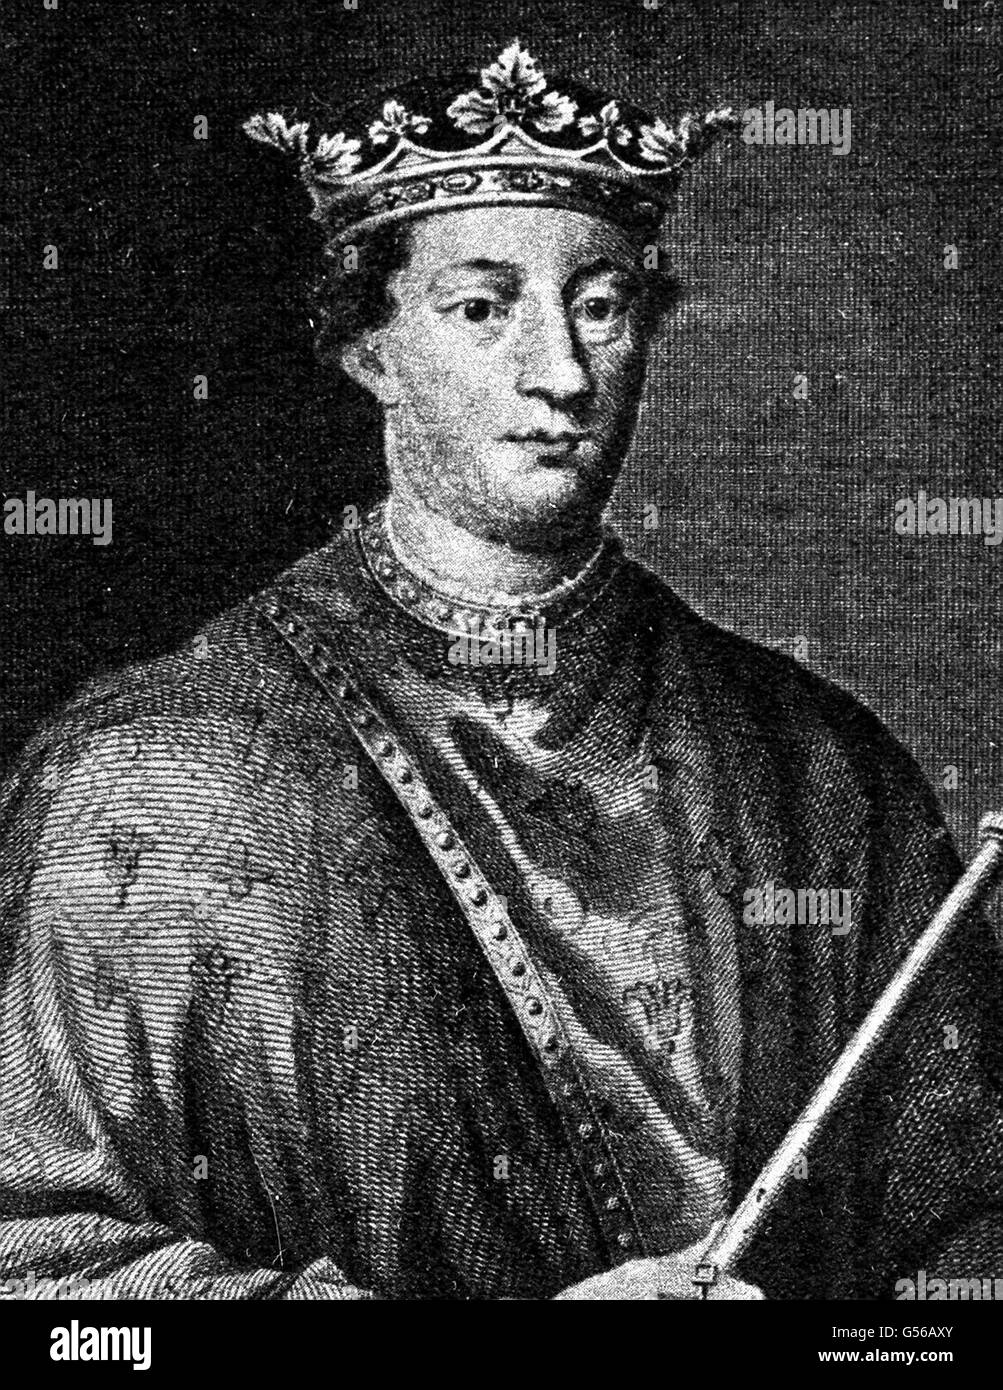 19/12/1154 - en ce jour de l'Histoire - Henri II couronné roi d'Angleterre; sa grande réalisation était de renforcer l'administration du pays et d'établir l'Échiquier.29 DÉCEMBRE : ce jour en 1170, Thomas Becket a été assassiné par quatre chevaliers sur les ordres du roi Henri IIROI HENRI II : Une représentation du roi Henri II, premier roi Plantagenet d'Angleterre (1154-1189).Il a étendu ses domaines anglo-français et institué des réformes judiciaires et financières.Thomas Becket, son ancien ami, s'opposa à ses tentatives de contrôler l'église.Becket fut plus tard assassiné par des chevaliers Banque D'Images